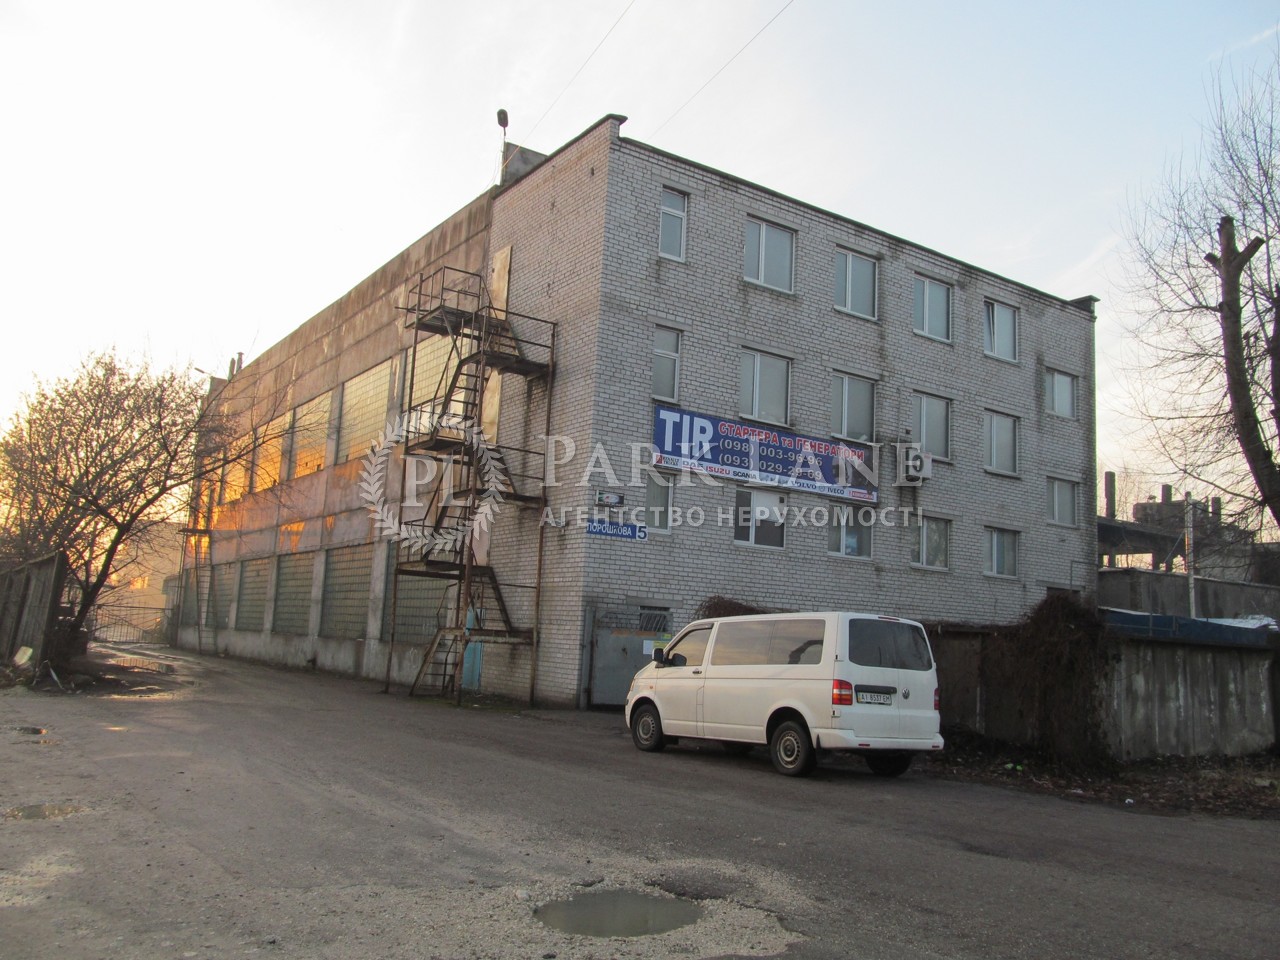  Производственное помещение, ул. Порошковая, Бровары, G-591723 - Фото 1